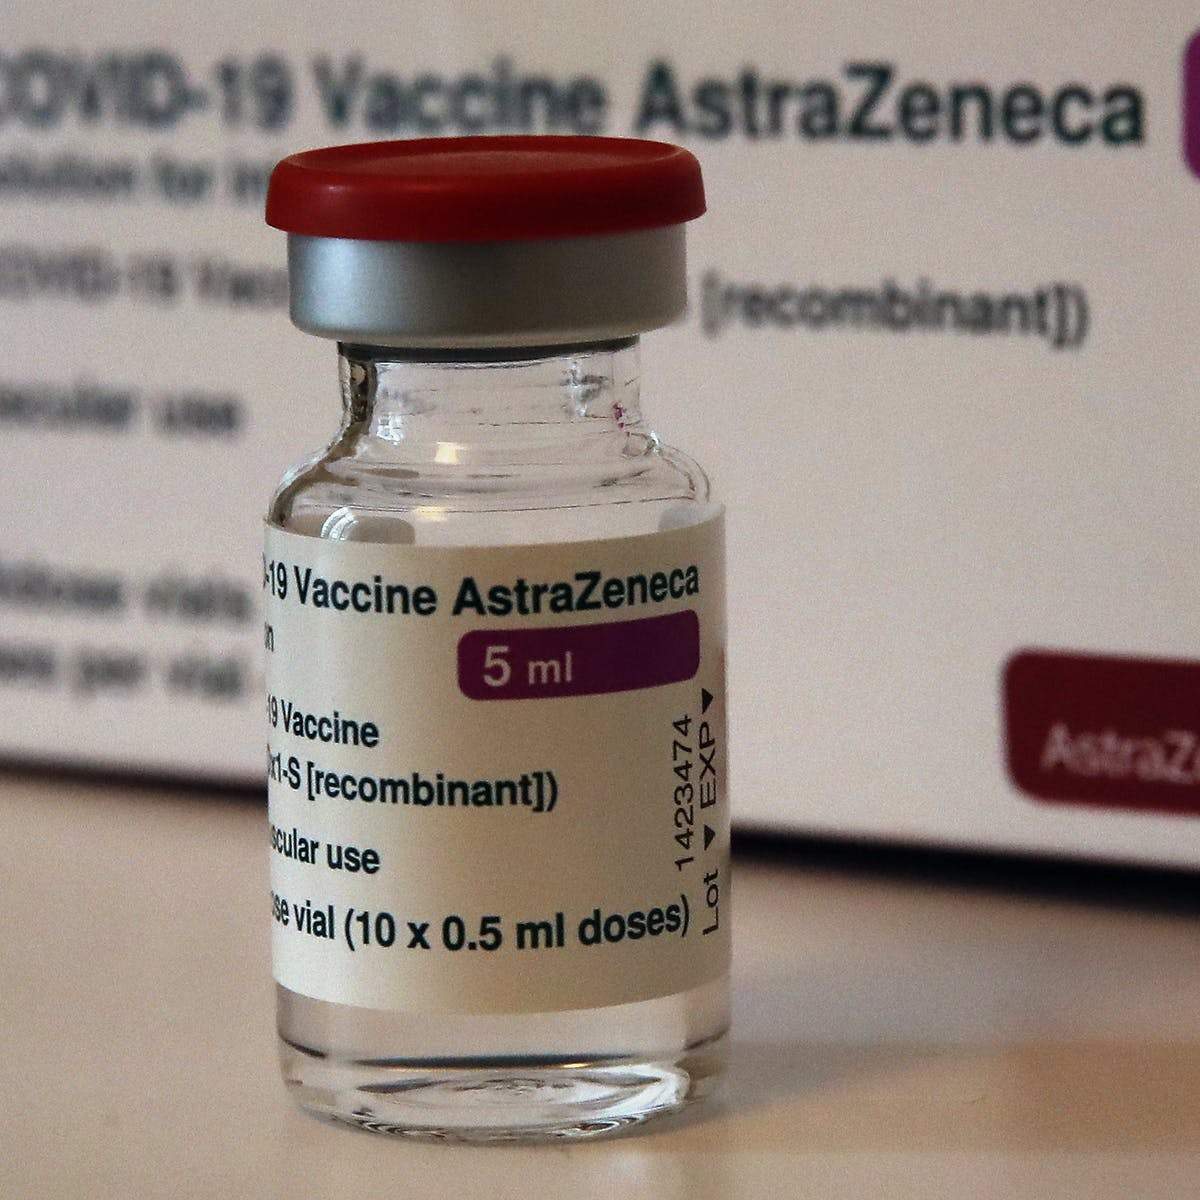 O sticlă de vaccin AstraZeneca